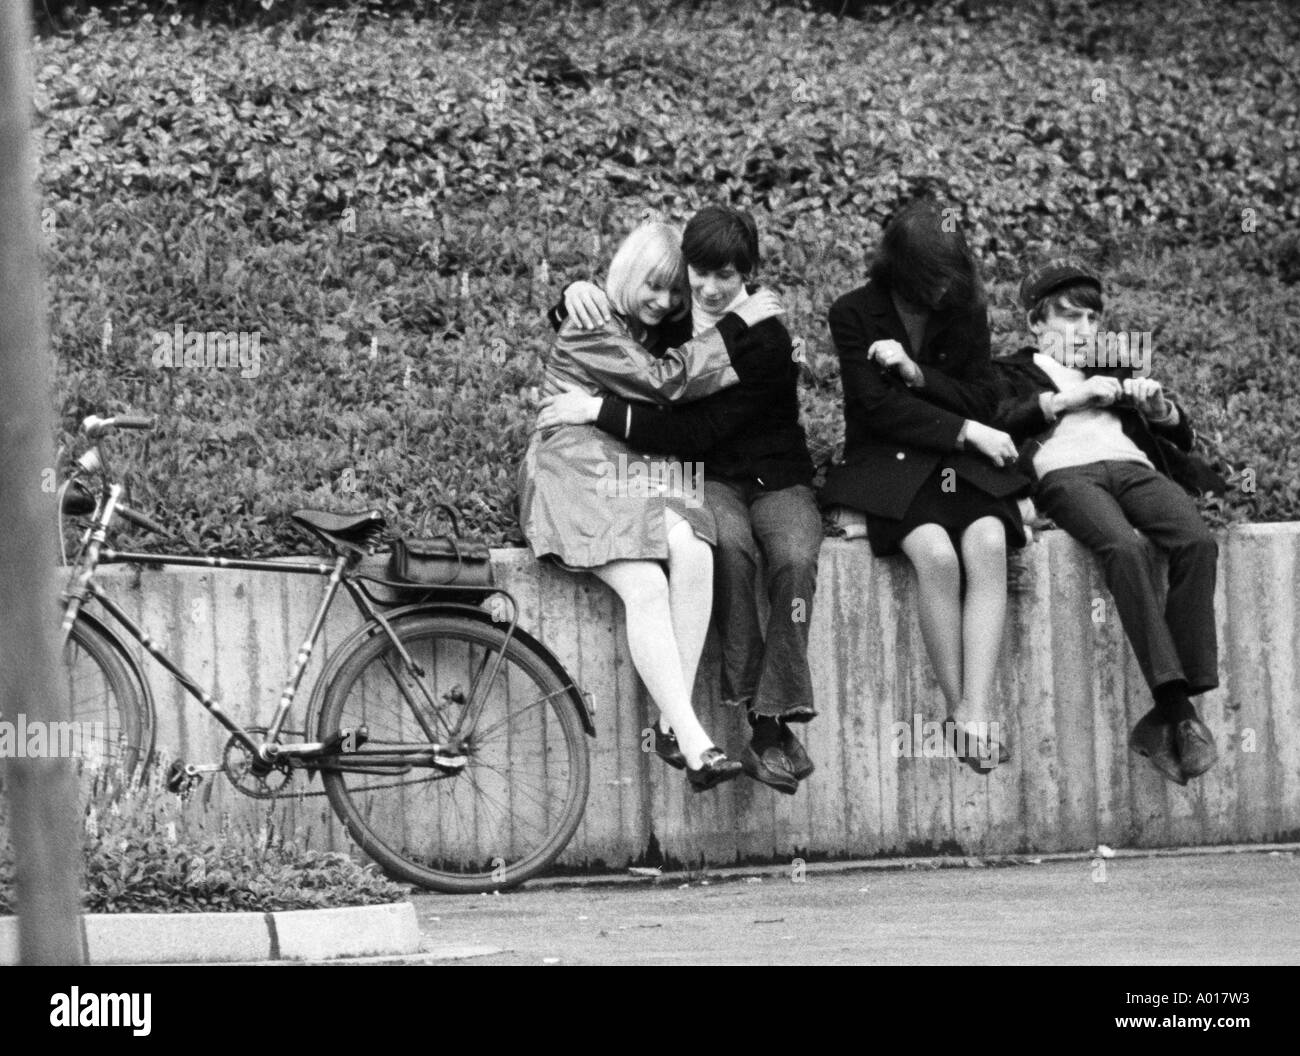 I Beatles, concerto in Essen, la zona della Ruhr, Gruga Hall, 1966, 1960s, sessanta, Inghilterra, Londra, Gran Bretagna, british pop band, musica, musicista, un gruppo di musica pop, cantanti, giovani in attesa di ingresso, giovani, ragazze e ragazzi, coppia giovane, bicicletta, bi Foto Stock